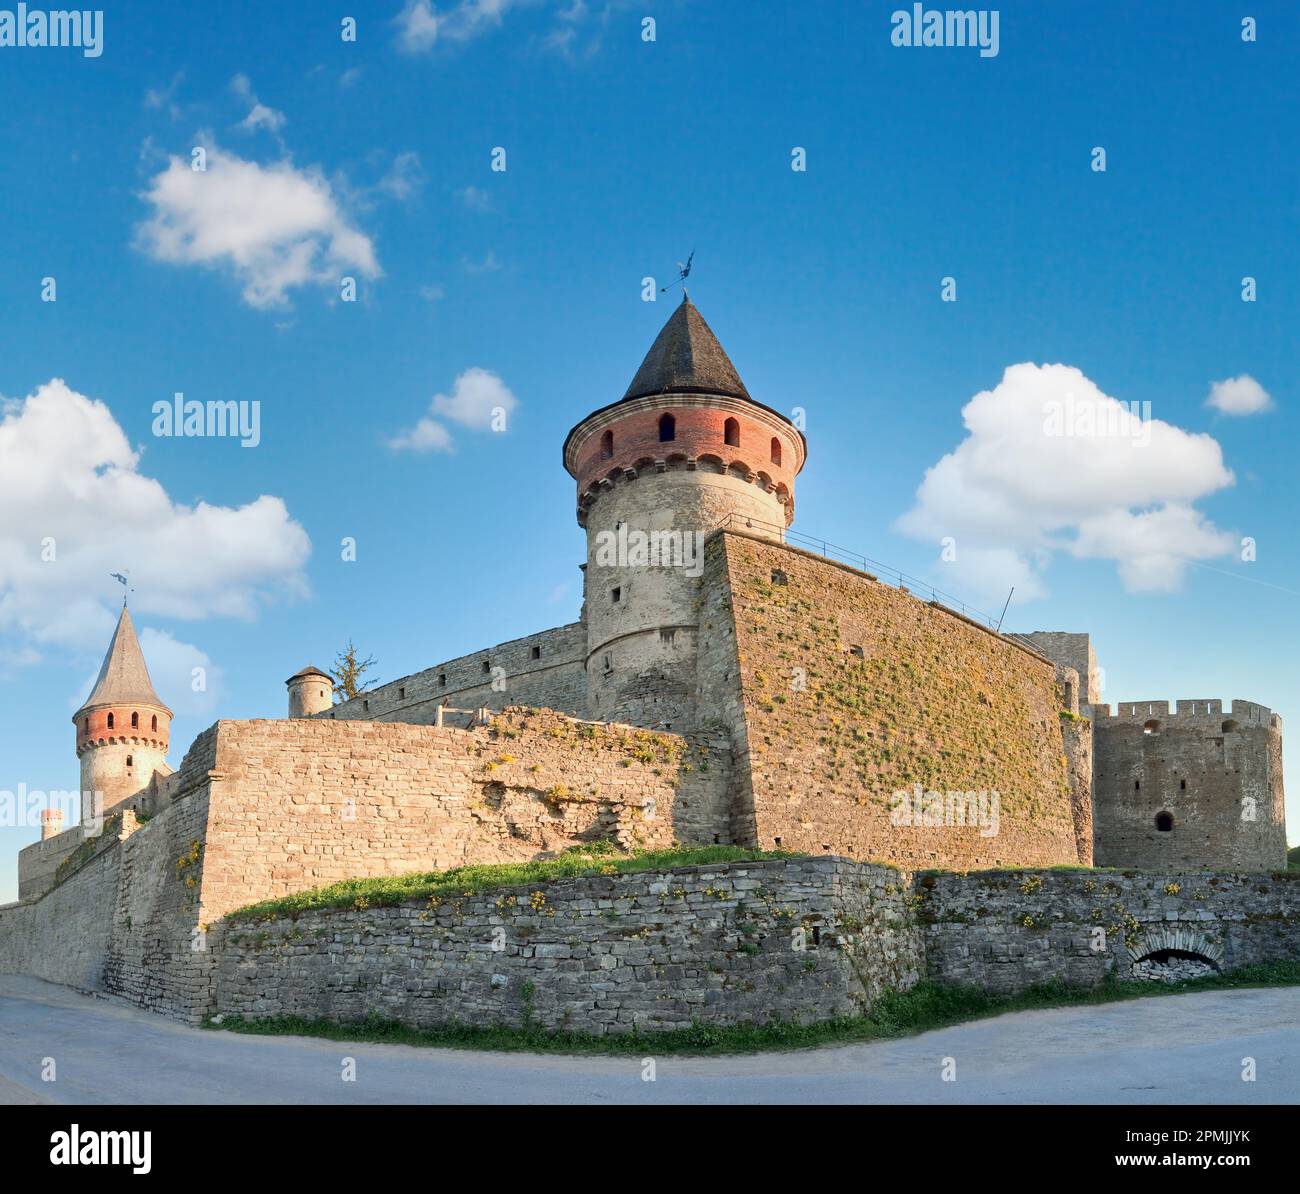 Il castello di Kamianets-Podilskyi (Khmelnytskyi Oblast, Ucraina) è un antico castello polacco che è una delle sette meraviglie dell'Ucraina. Costruito all'inizio del 14th ce Foto Stock